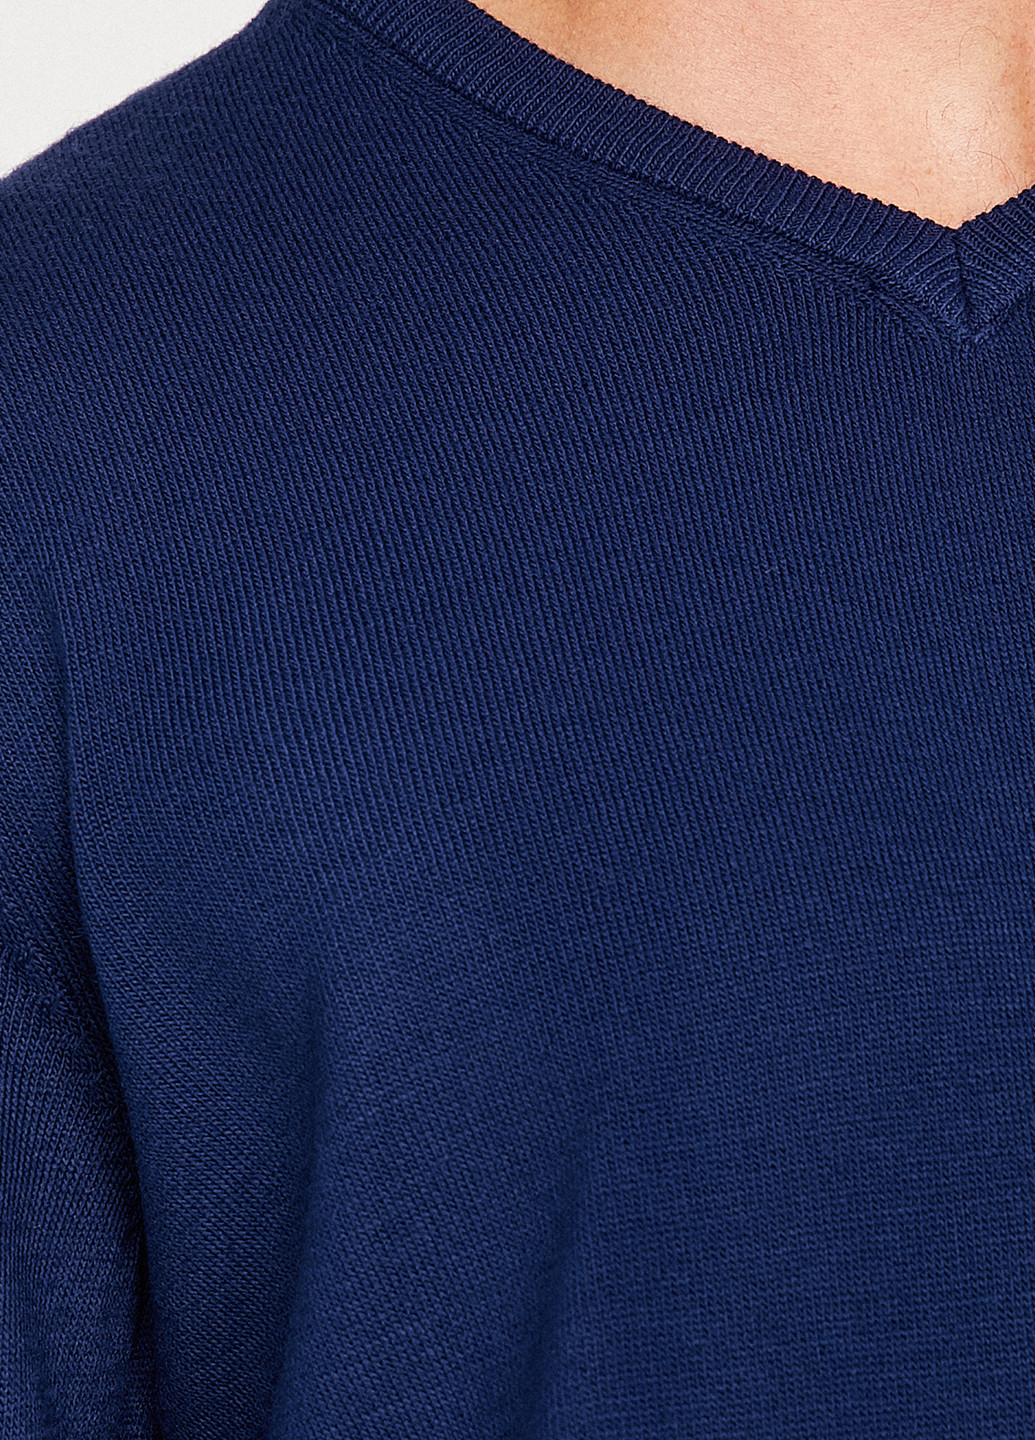 Синий зимний пуловер пуловер KOTON